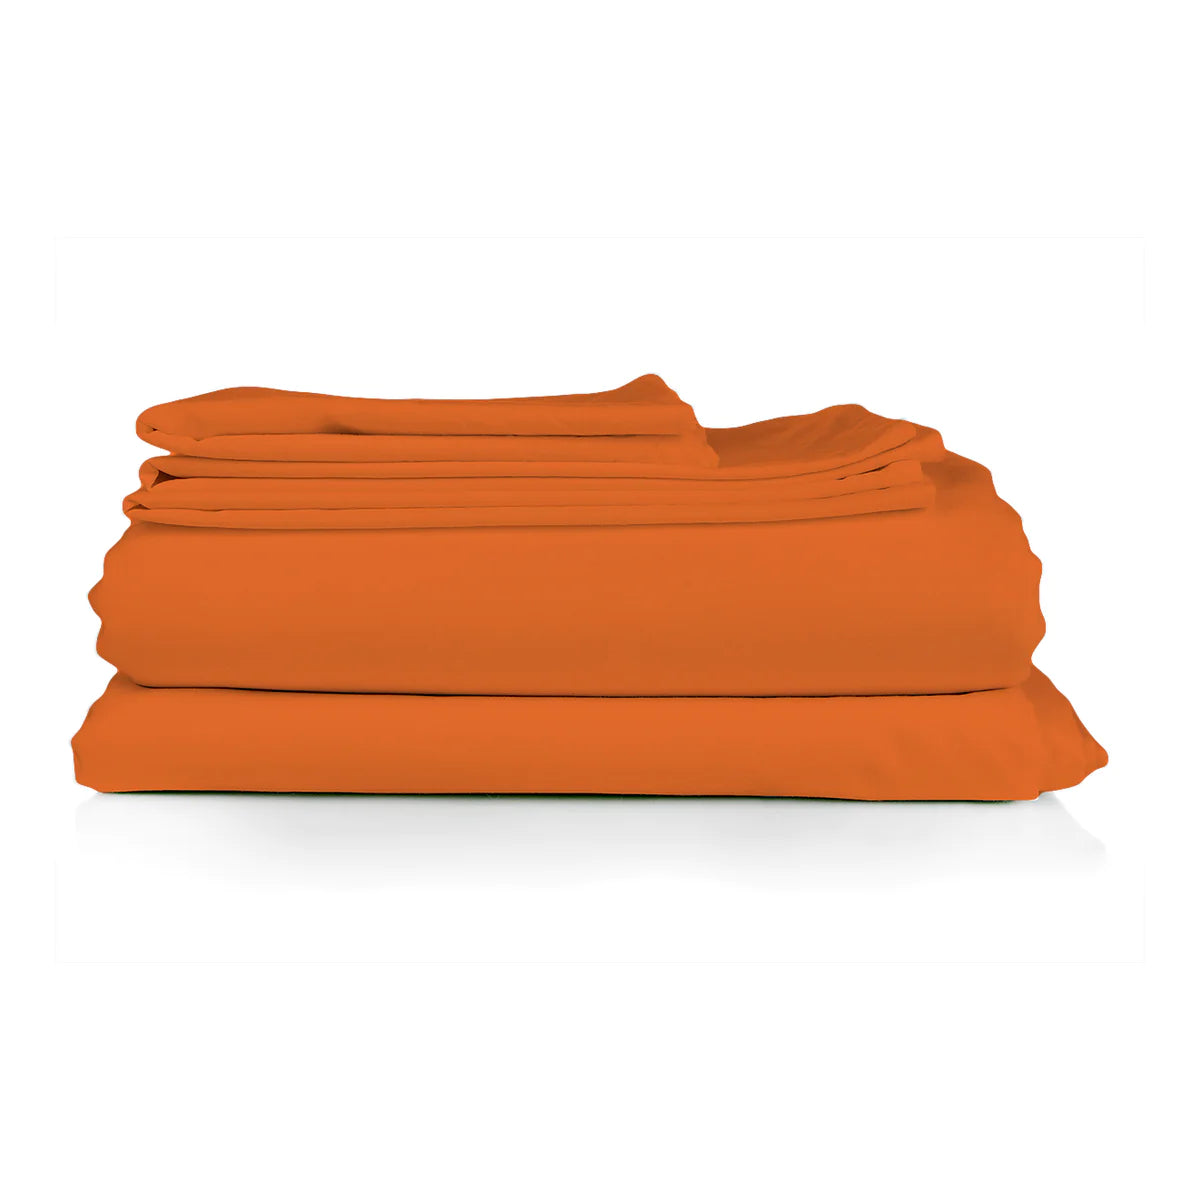 Completo lenzuola letto in cotone - in varie misure e colorazioni